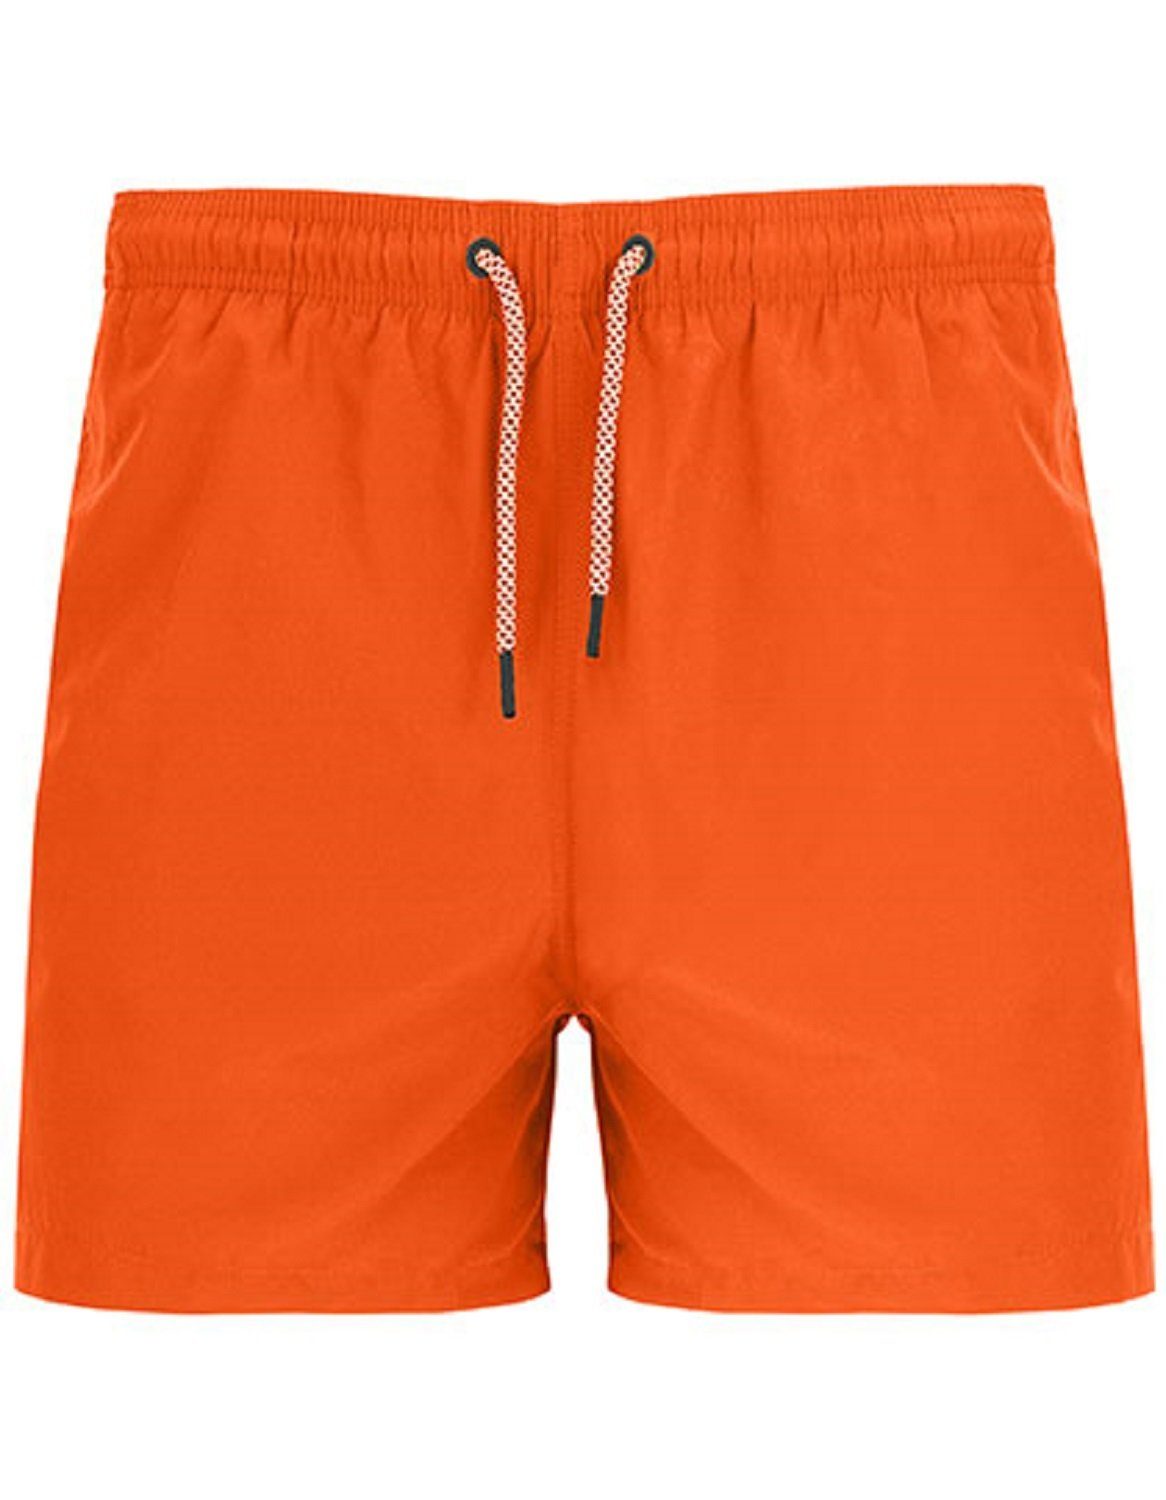 zwei Farben verschiedene Badehose S mit Orange Seitentaschen Badeshorts Roly Sport / Herren Gr. XXL - bis Badehose